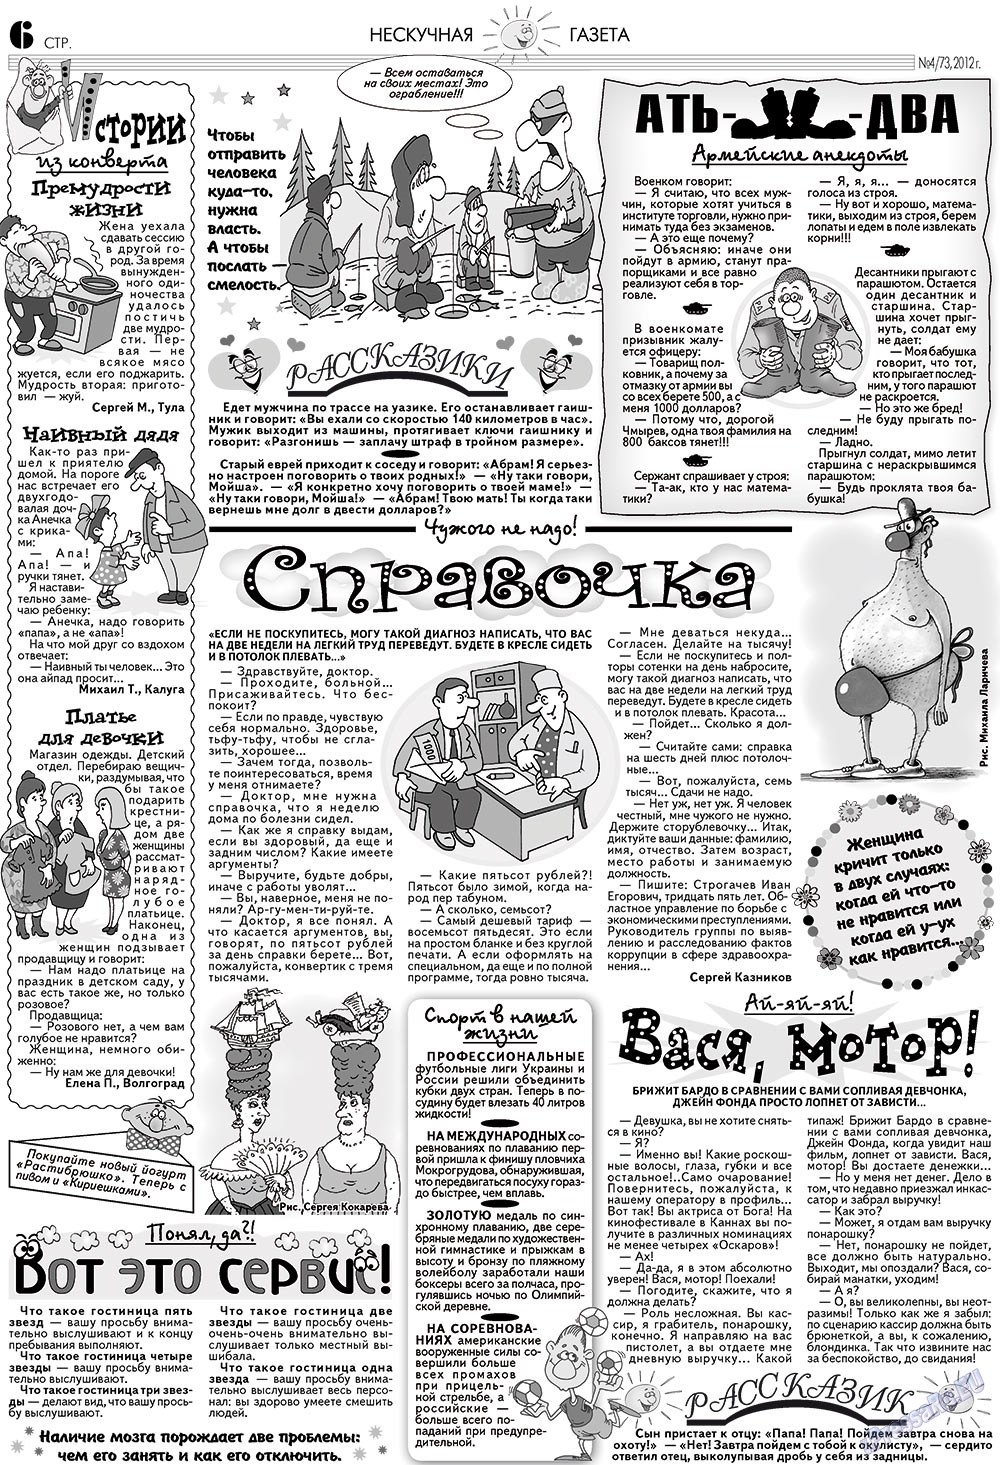 Нескучная газета (журнал). 2012 год, номер 4, стр. 6